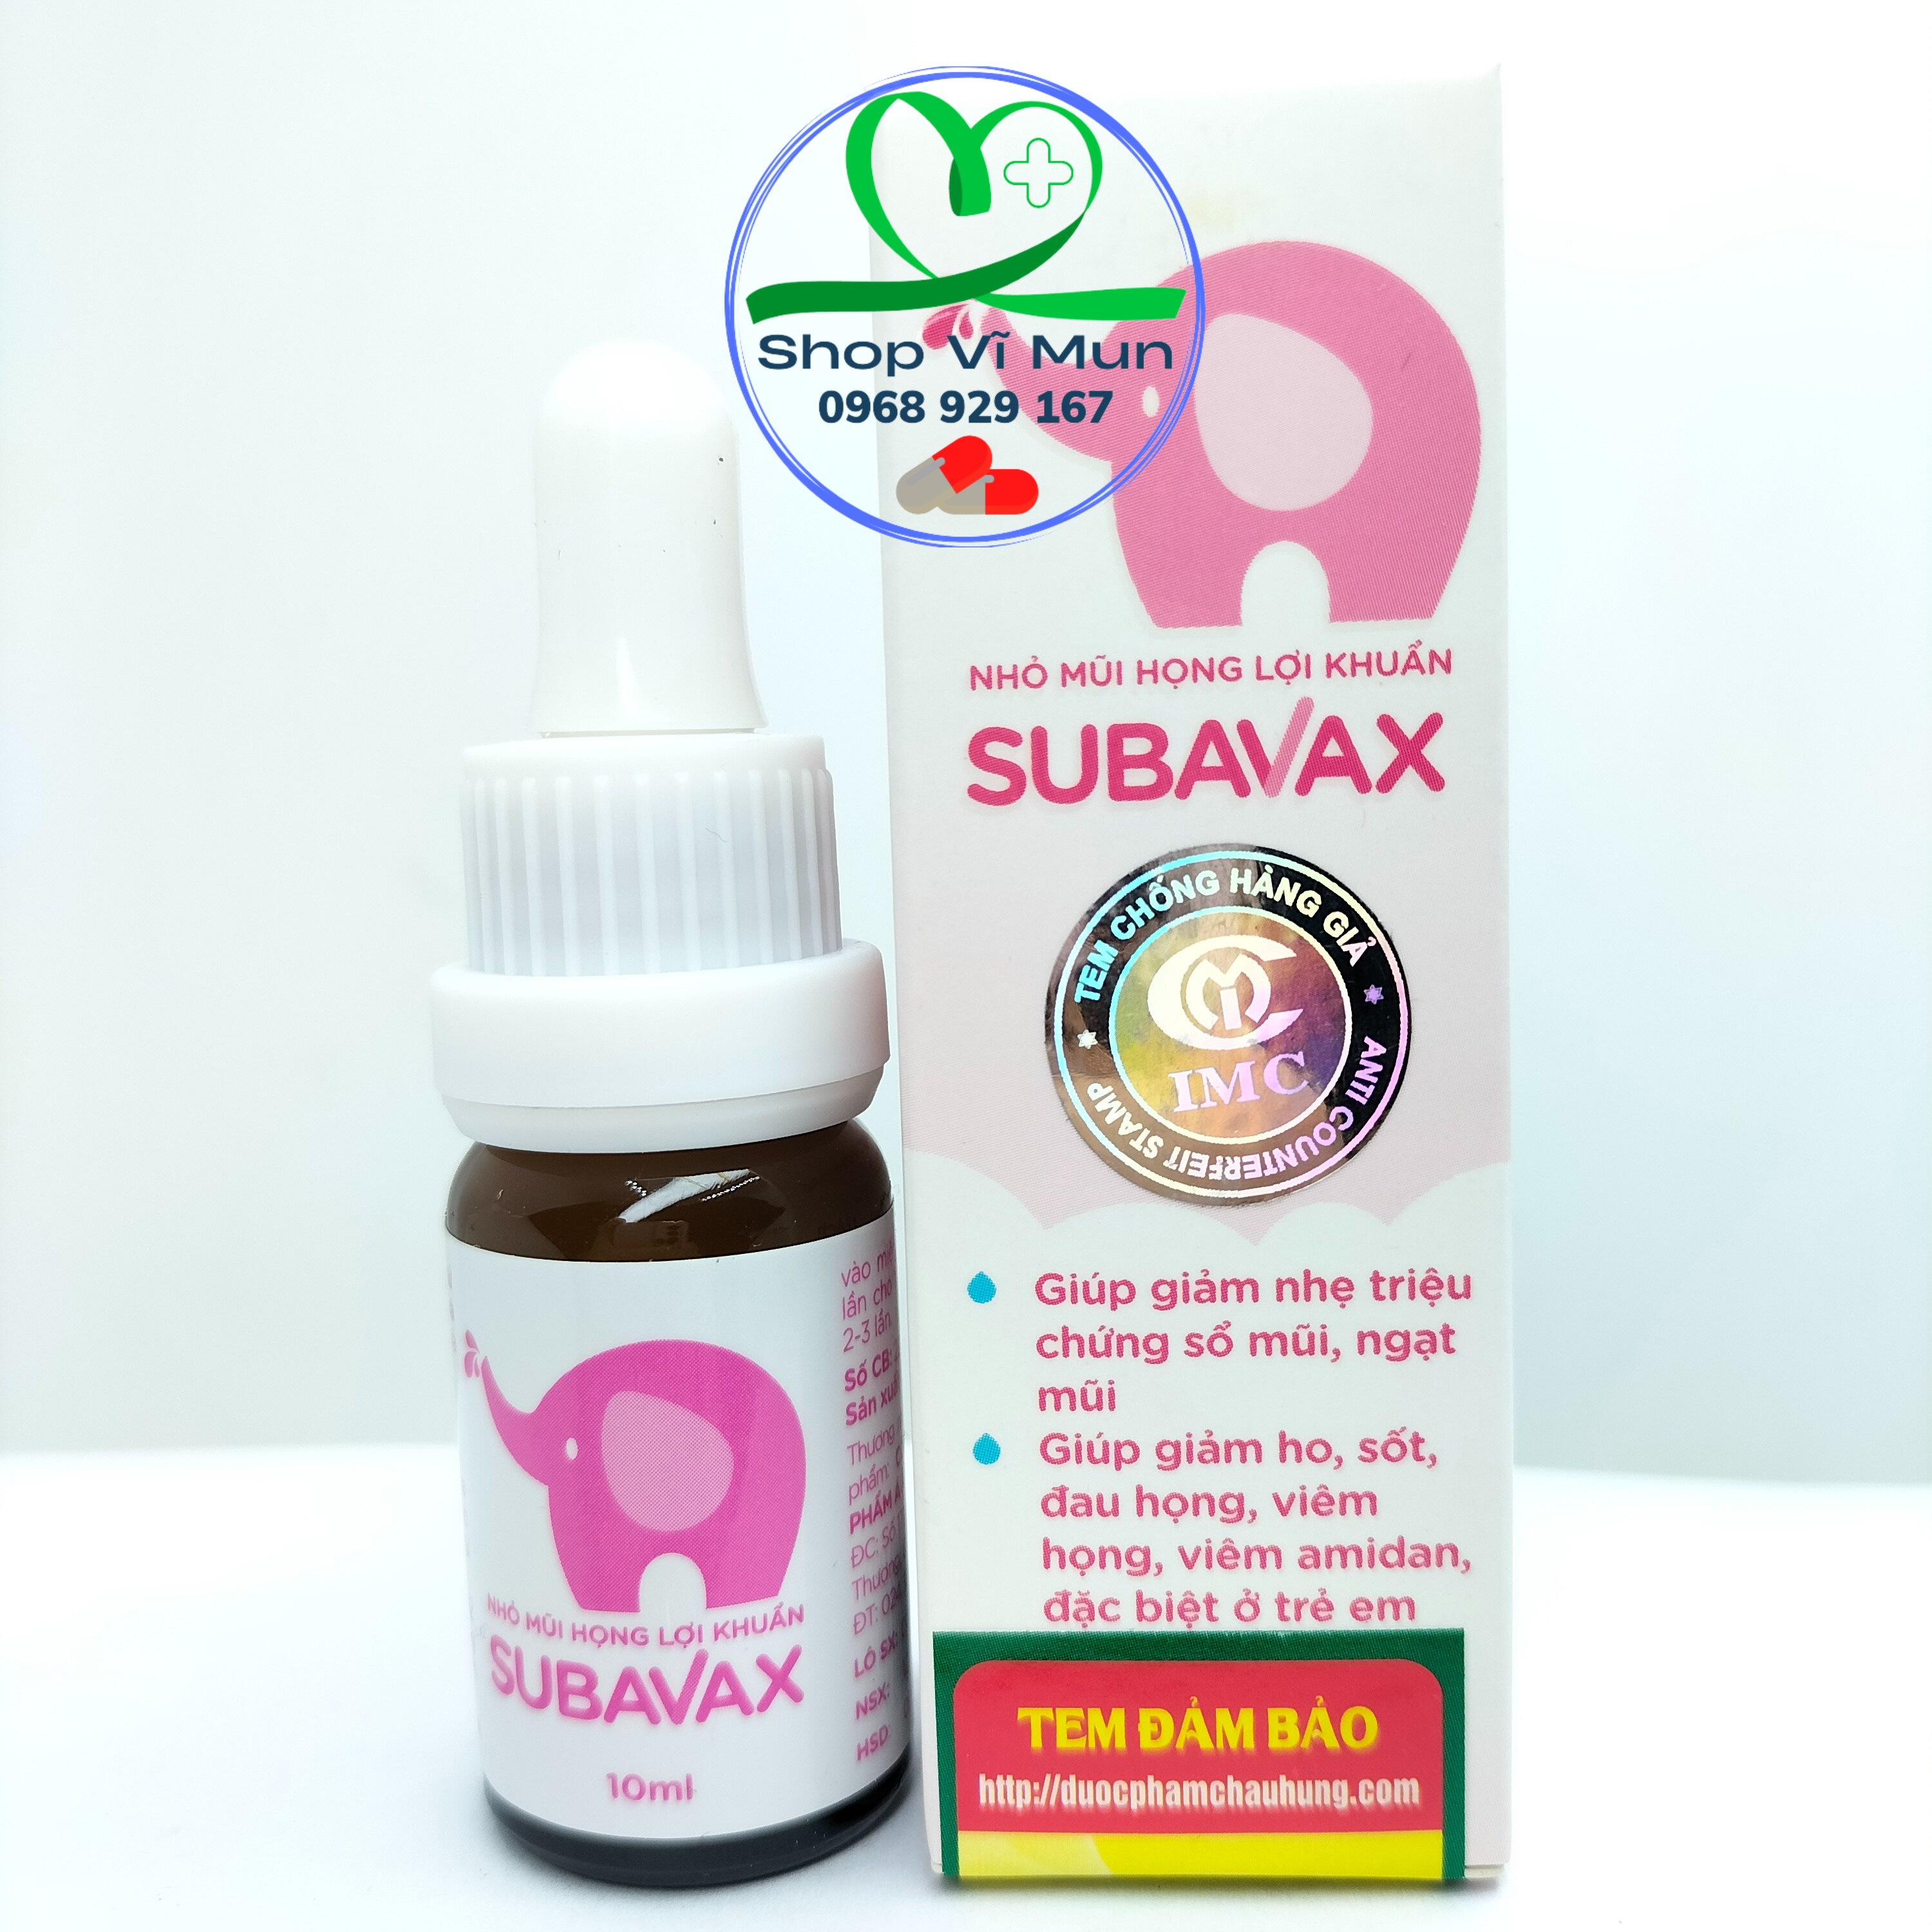 Nhỏ mũi họng lợi khuẩn SUBAVAX 10ml - Bổ sung lợi khuẩn đường hô hấp